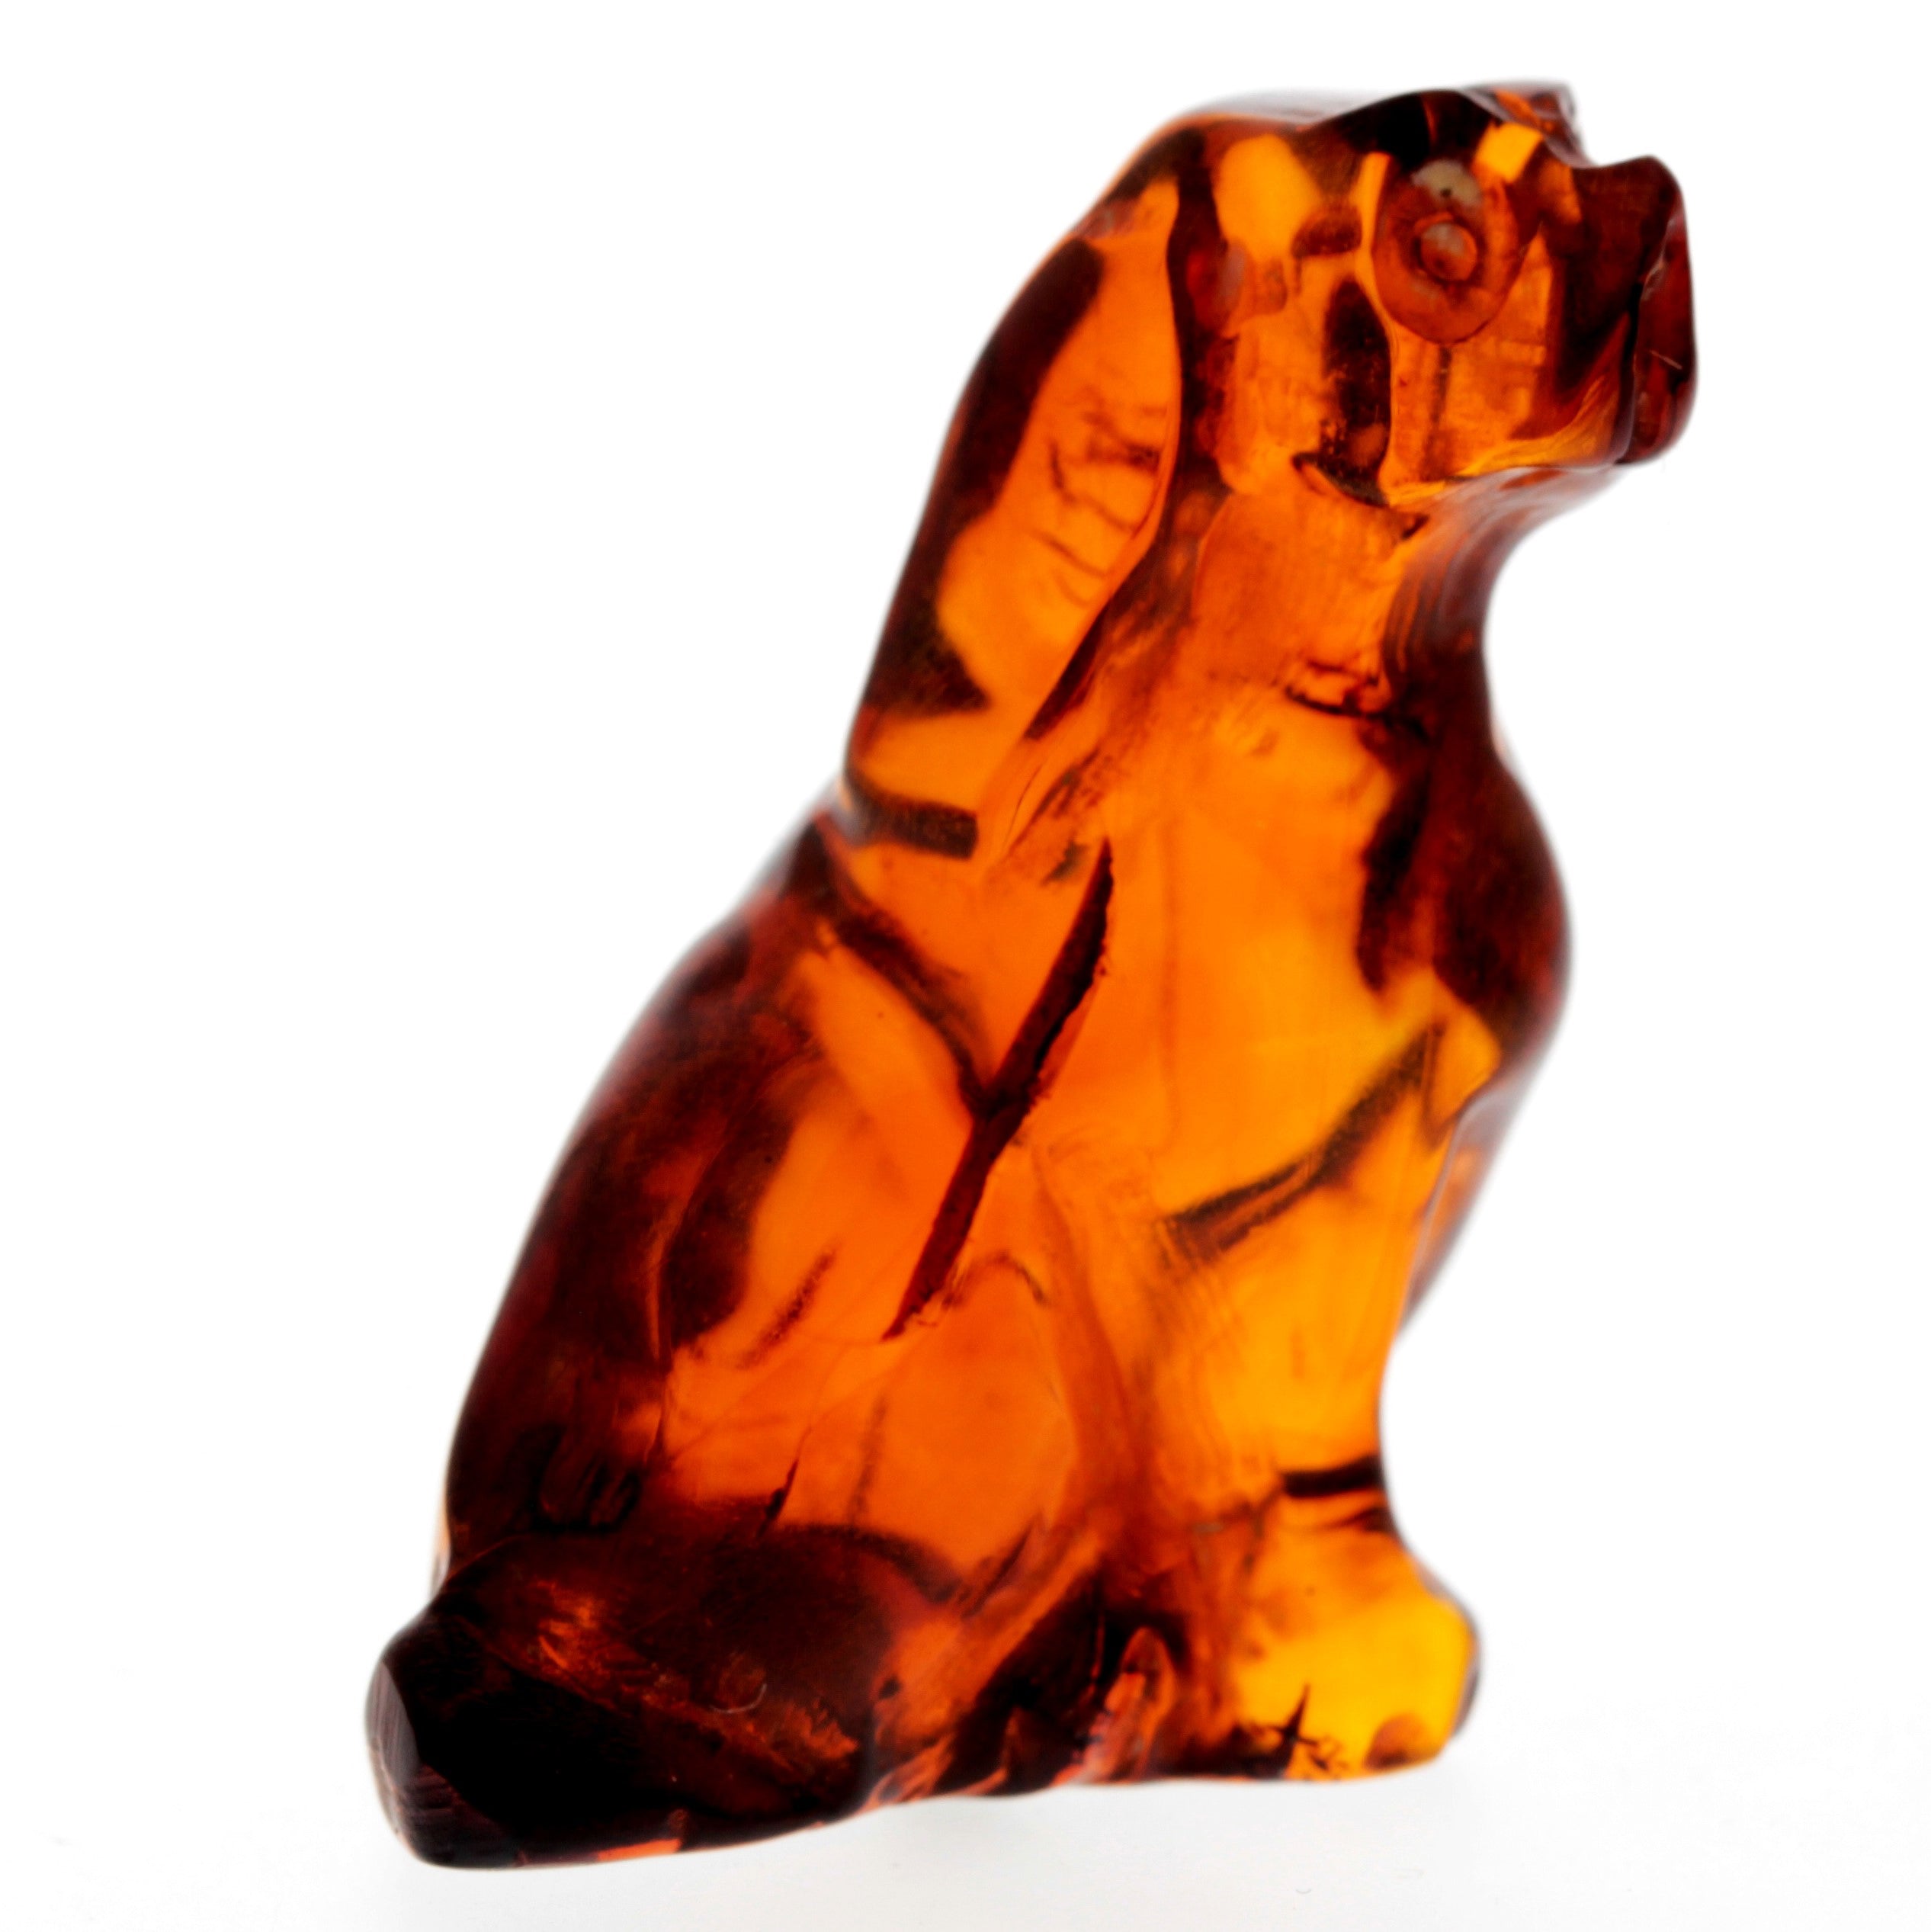 Figurine Superb Quality Handmade Natural Carved Dog made of Genuine Baltic Amber - CRV84